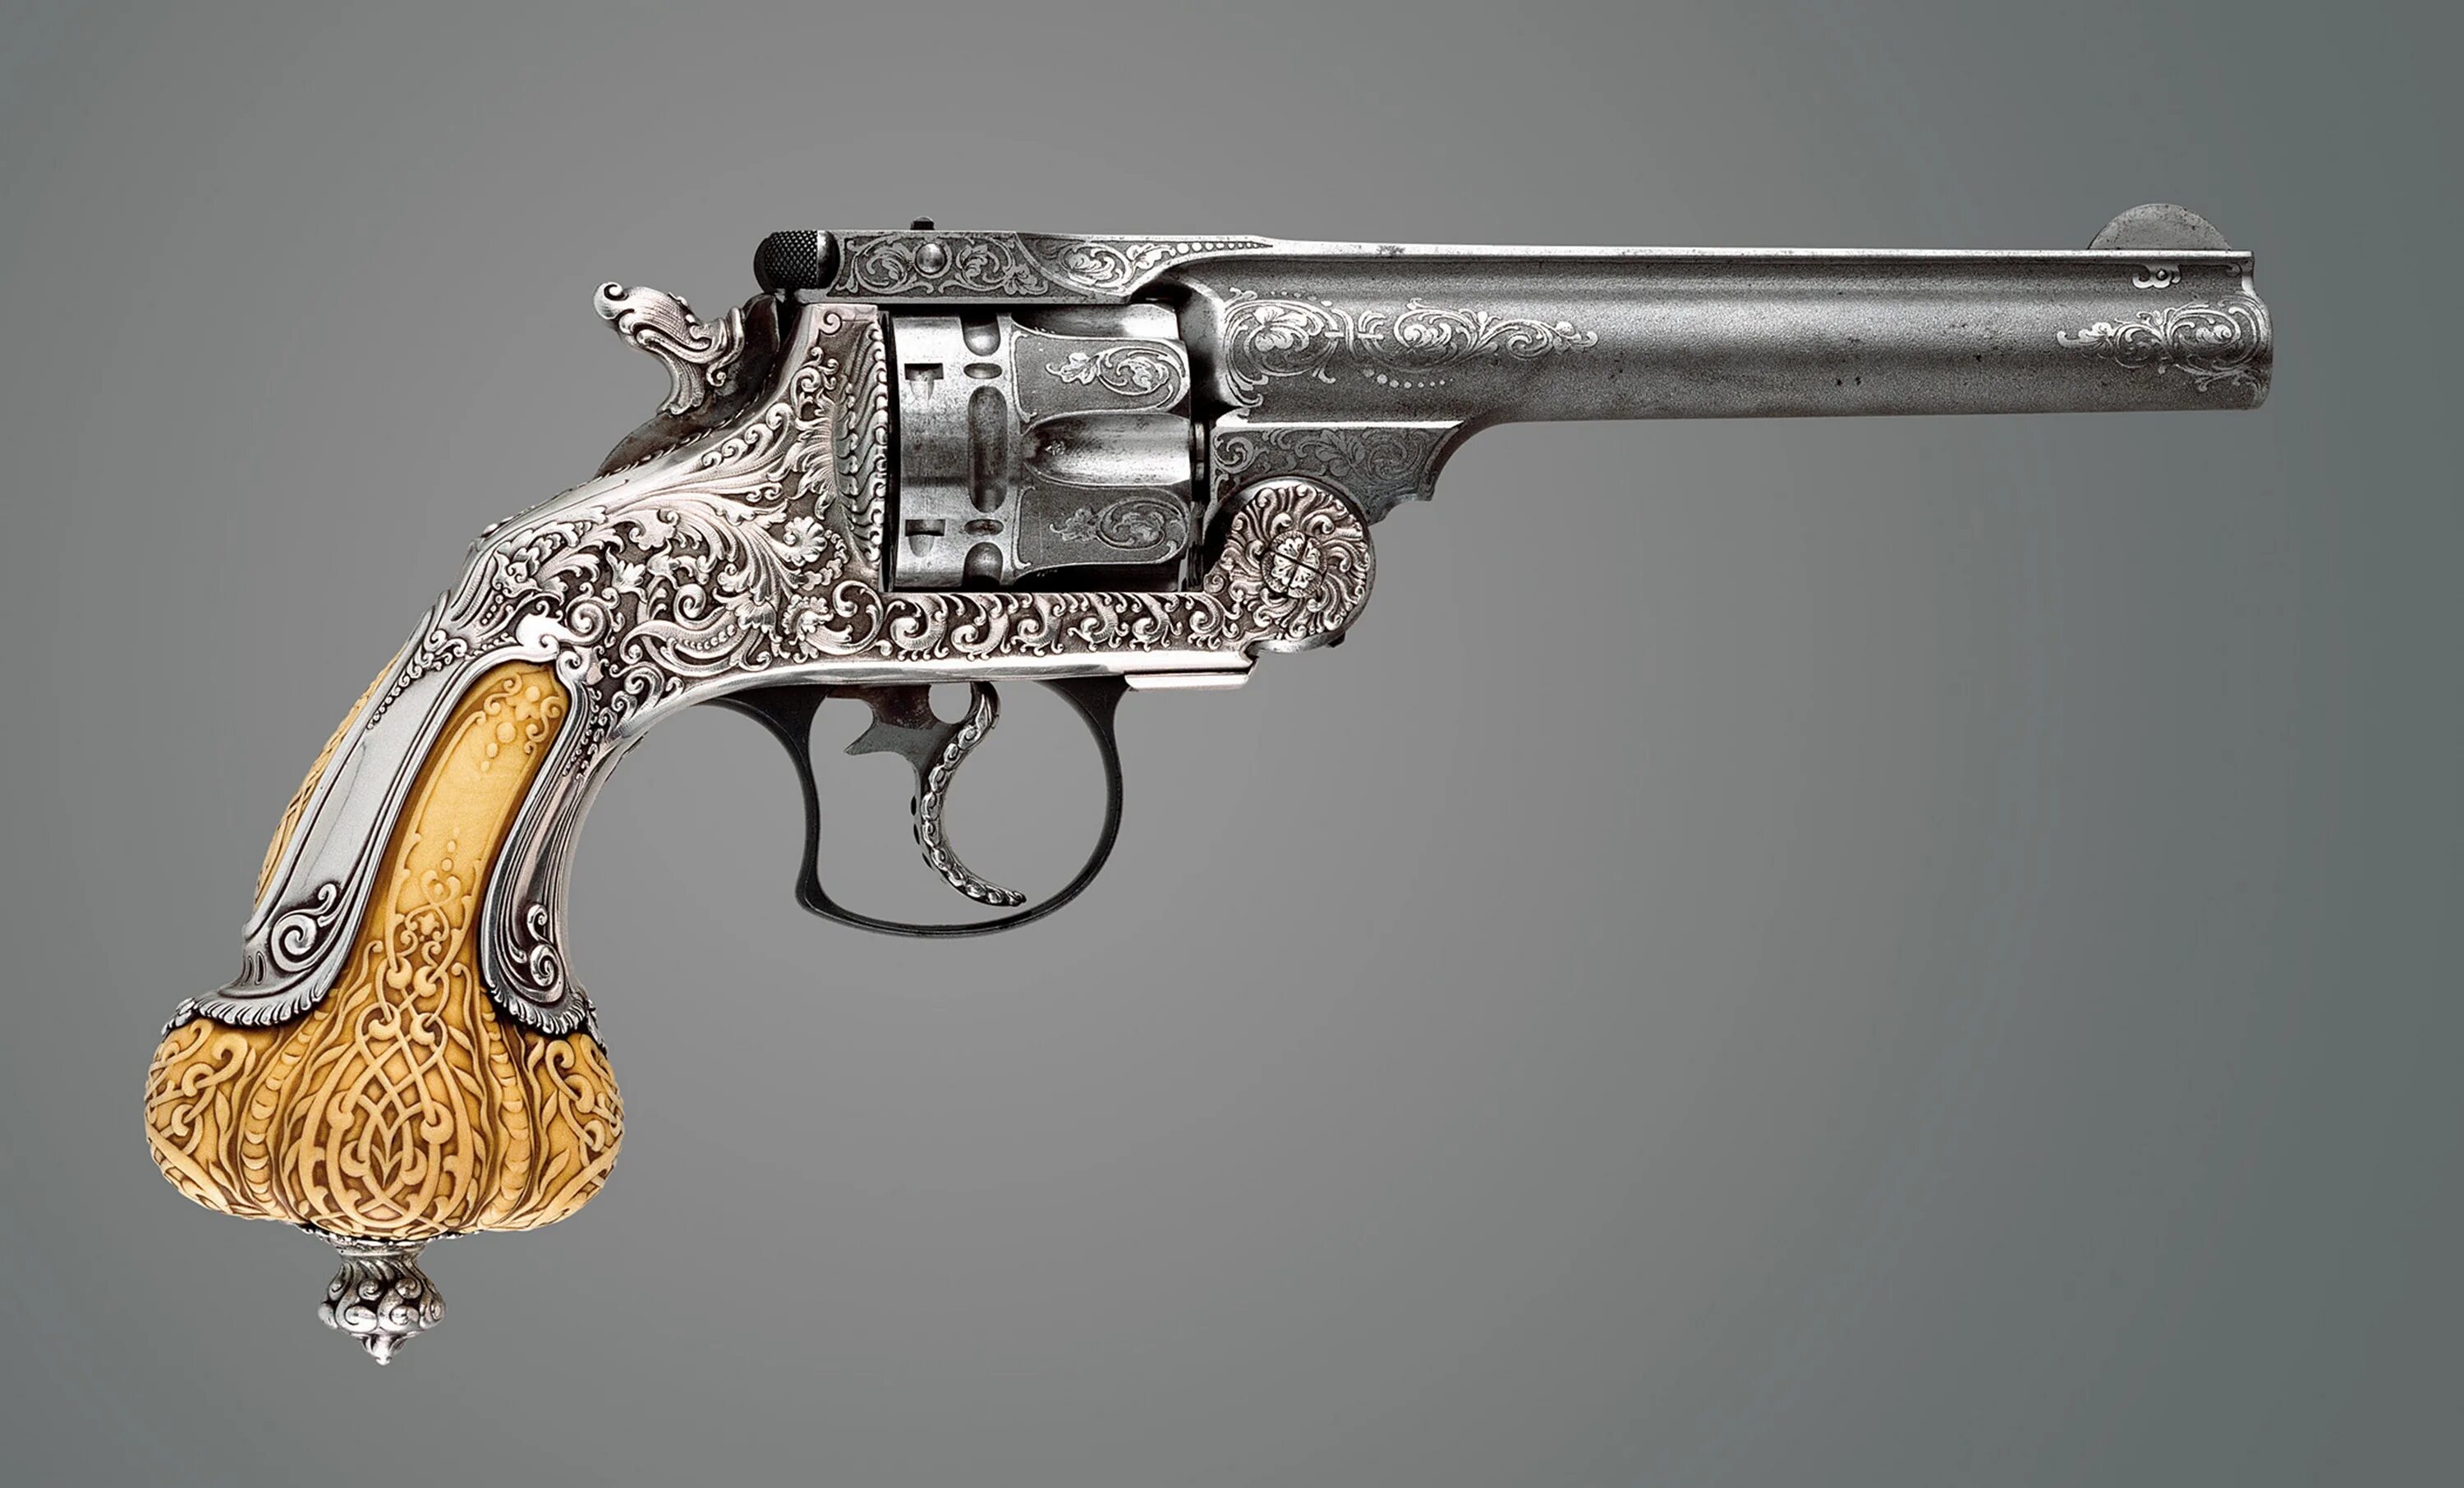 Револьвер Вессон Смит Голд. Кольт 1892 револьвер. Золотой револьвер Магнум. Смит-Вессон револьвер 19 века с гравировкой.